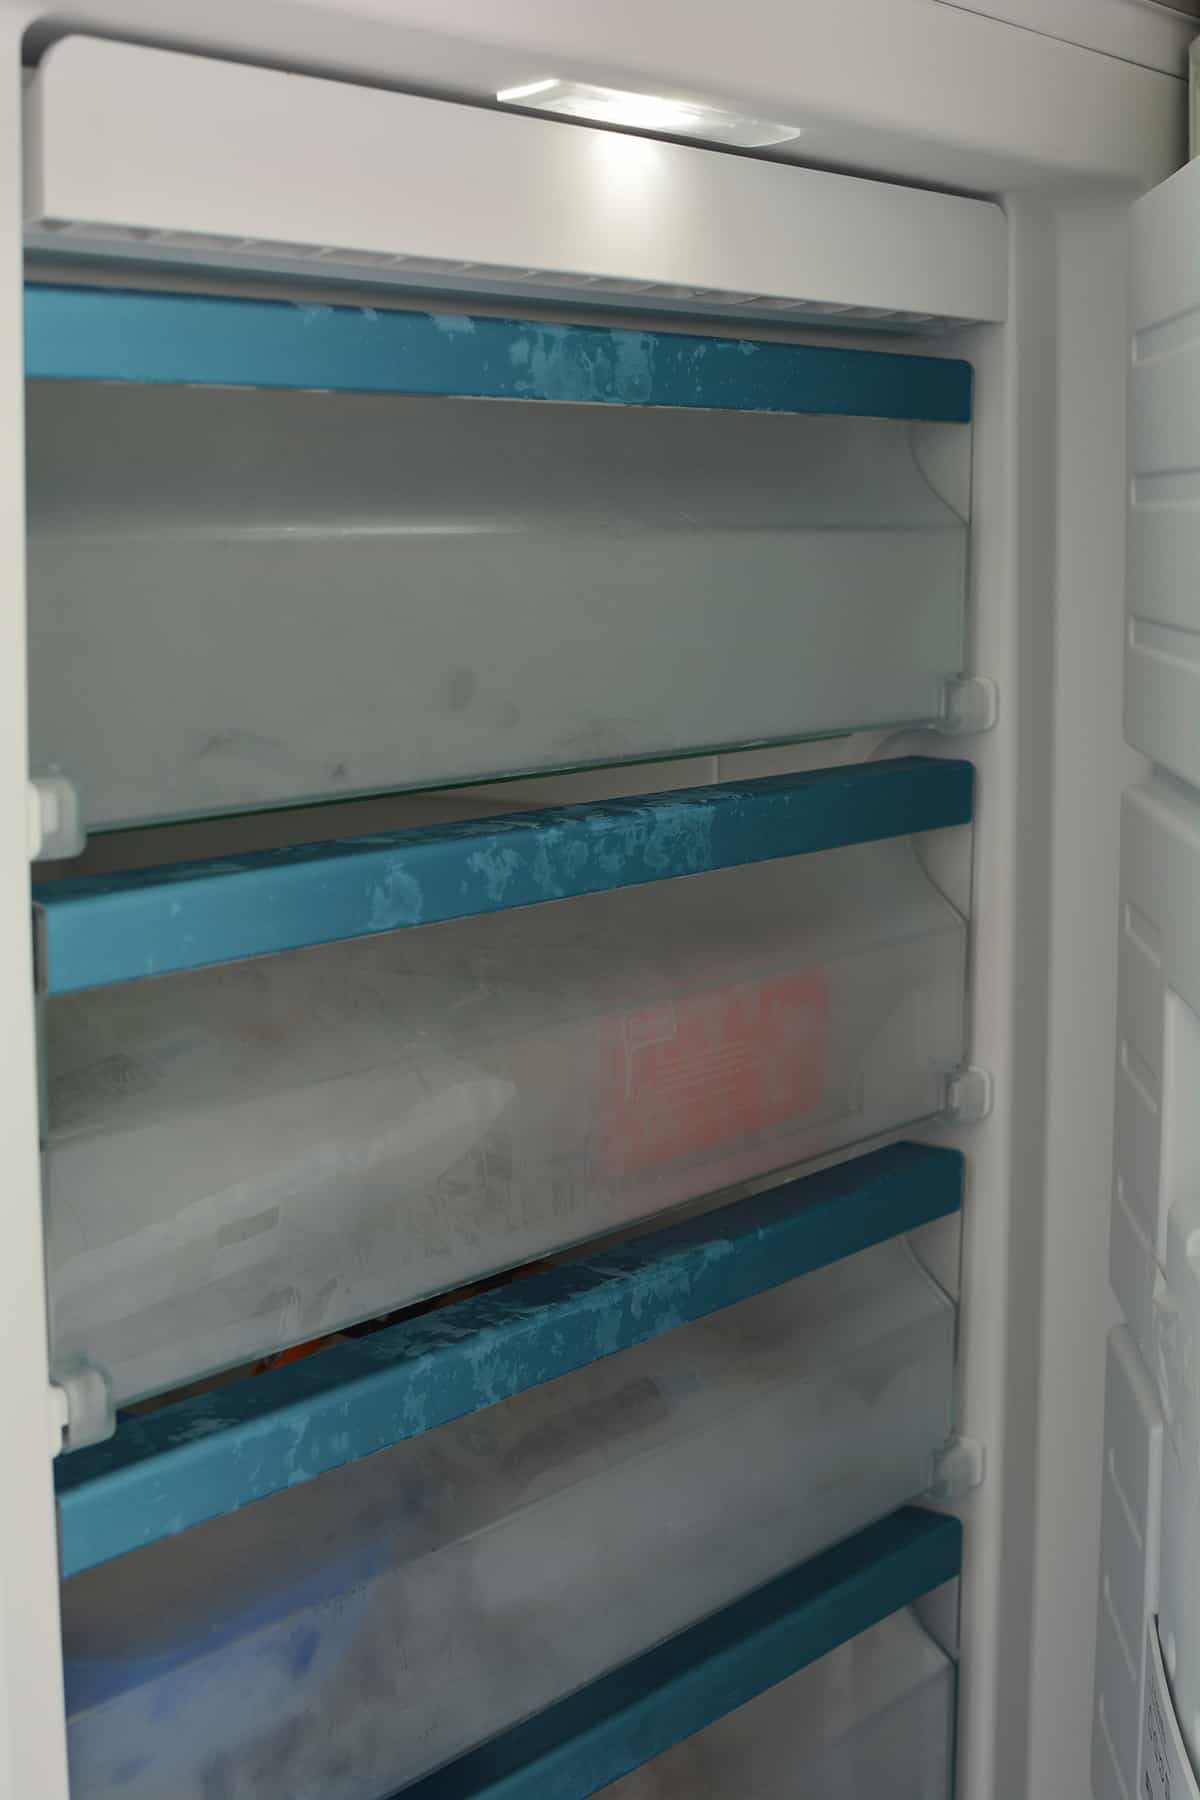 Possible Risks if Freezer Door is Left Open